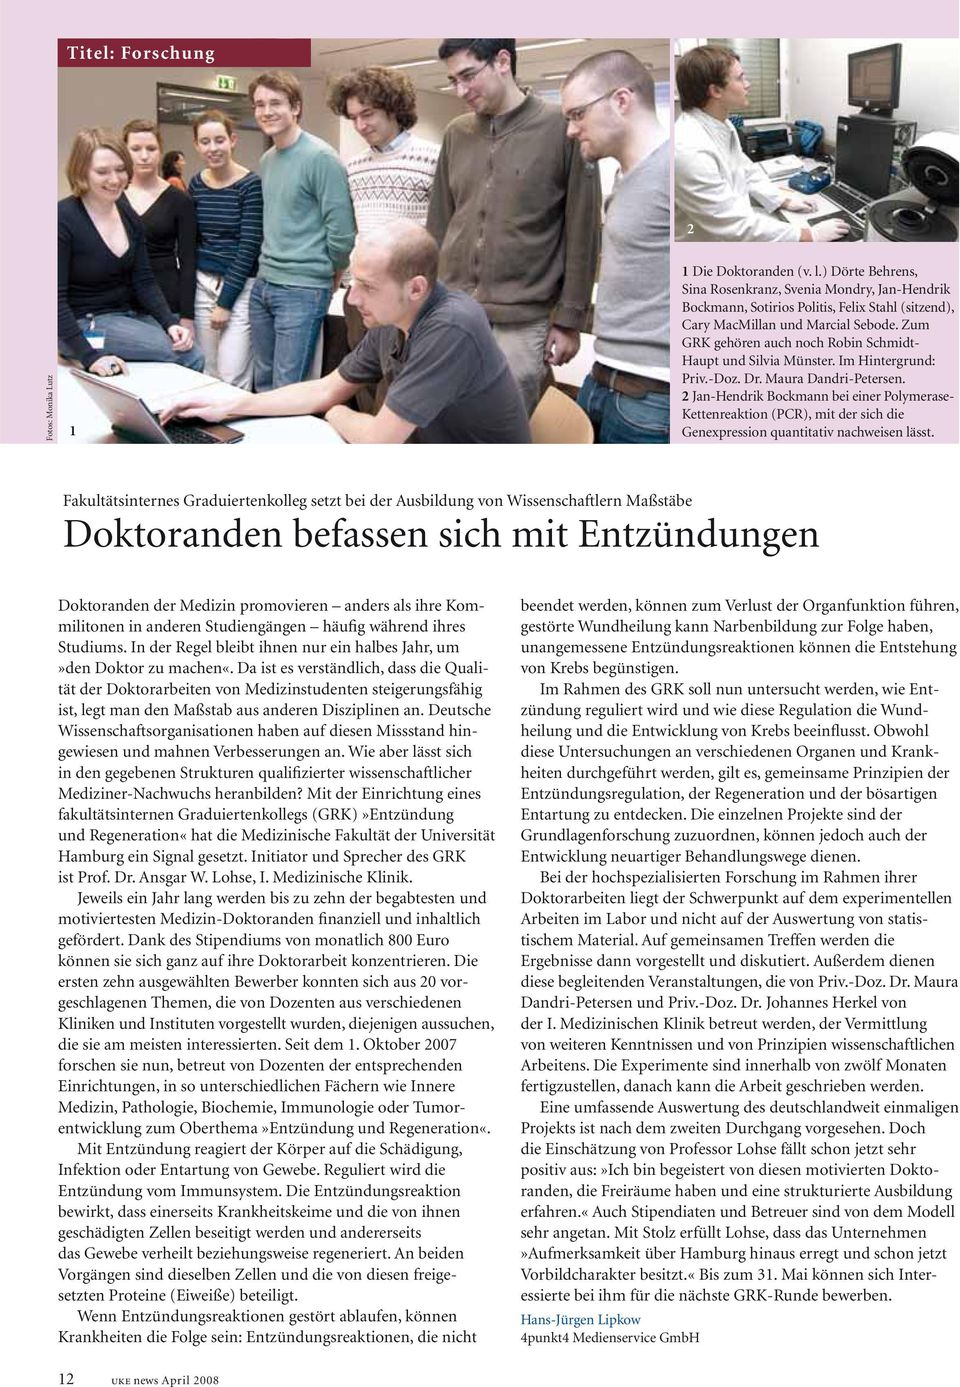 Zum GRK gehören auch noch Robin Schmidt- Haupt und Silvia Münster. Im Hintergrund: Priv.-Doz. Dr. Maura Dandri-Petersen.